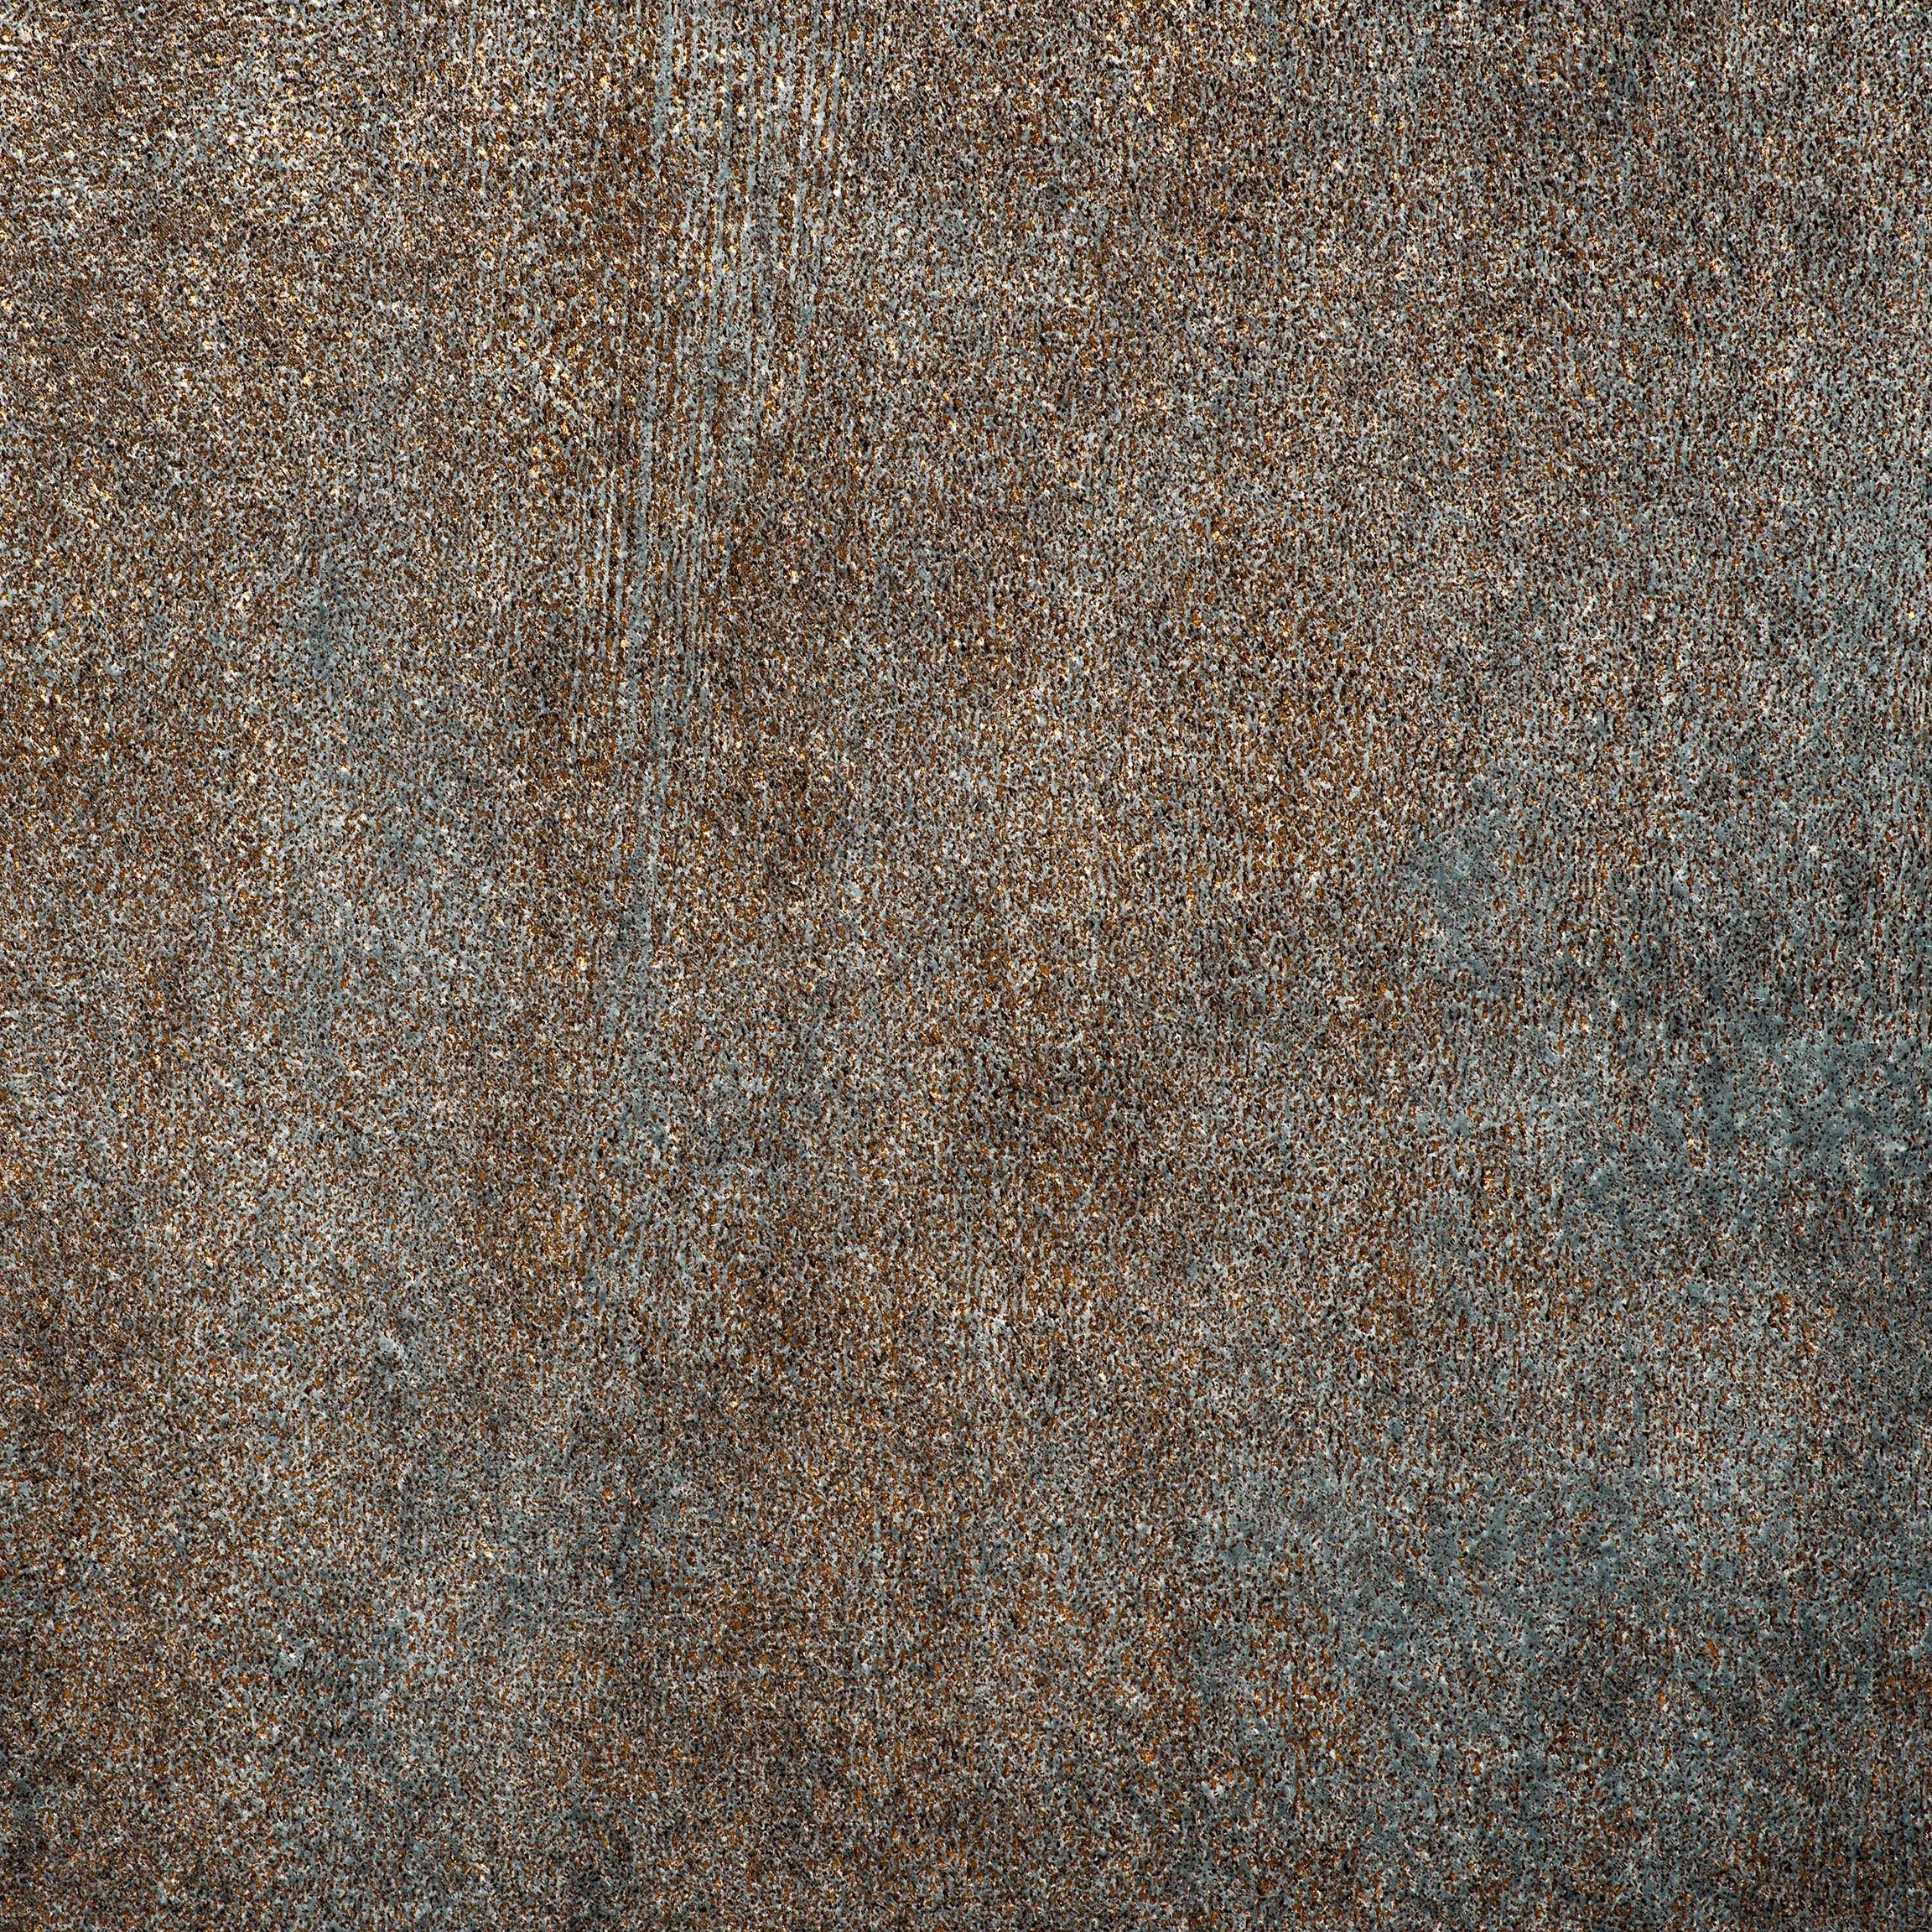  Портьерная ткань METALLIC SILVER, ширина 140 см  - Фото